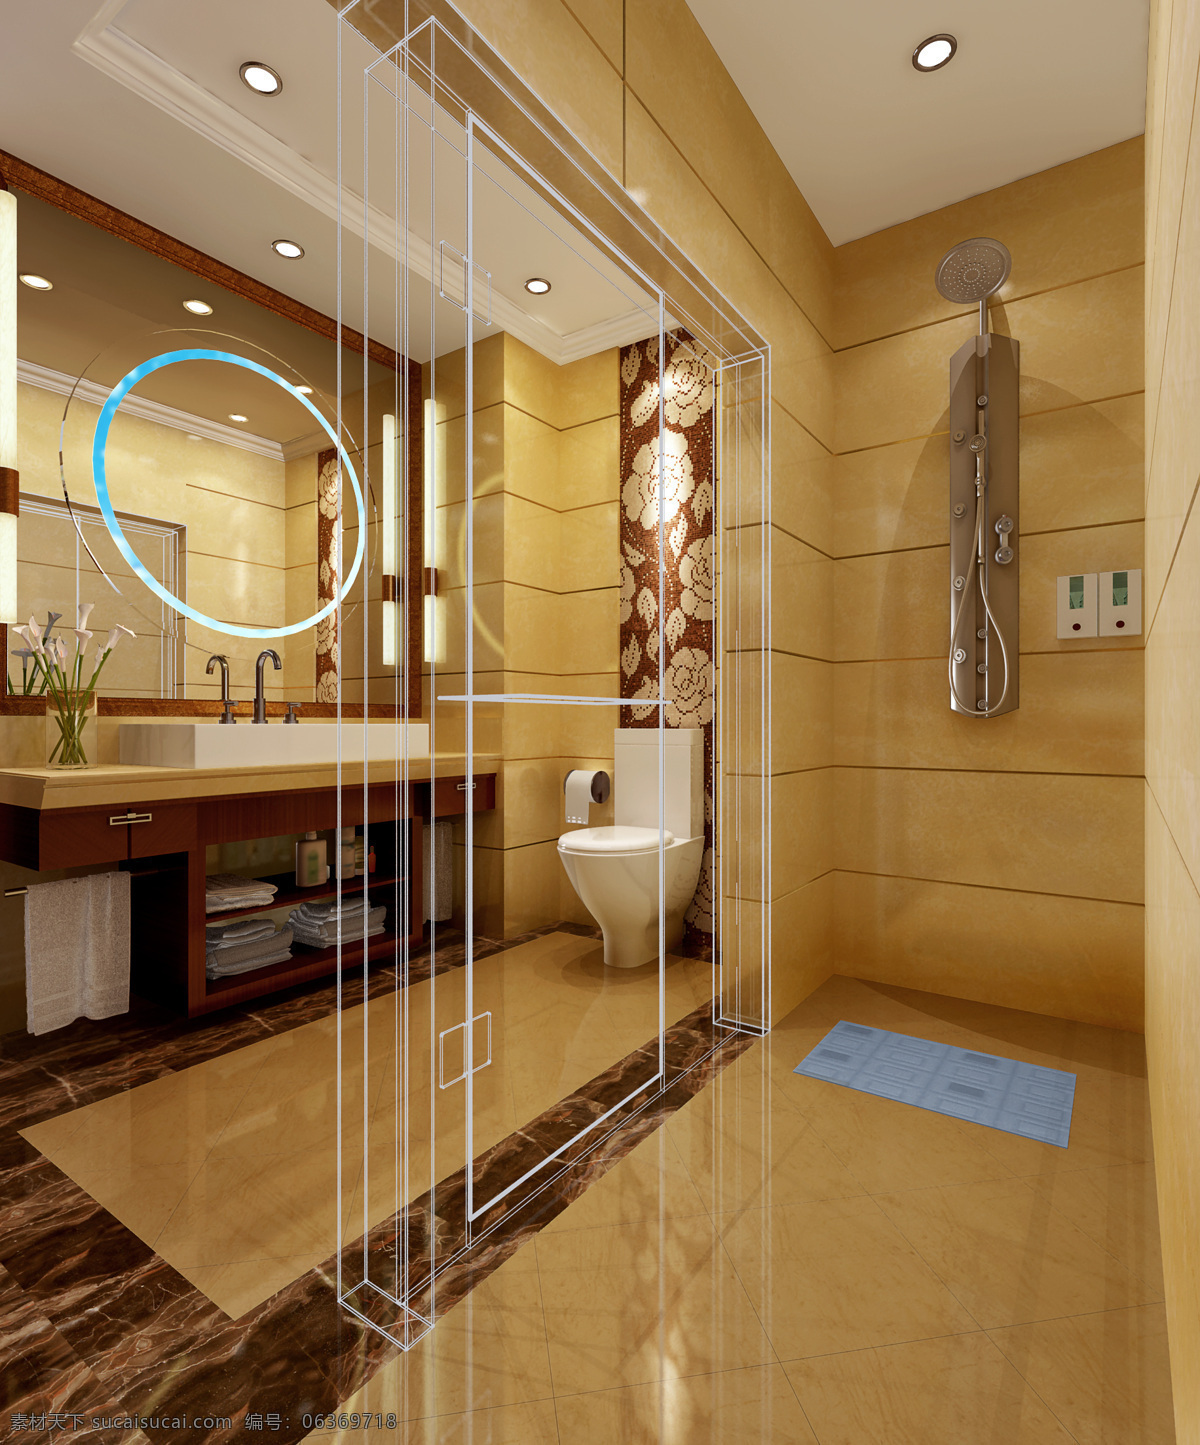 3d作品 环境设计 欧式 欧式卫生间 室内设计 卫生间 效果图 设计素材 模板下载 浴室 浴池 3d设 家居装饰素材